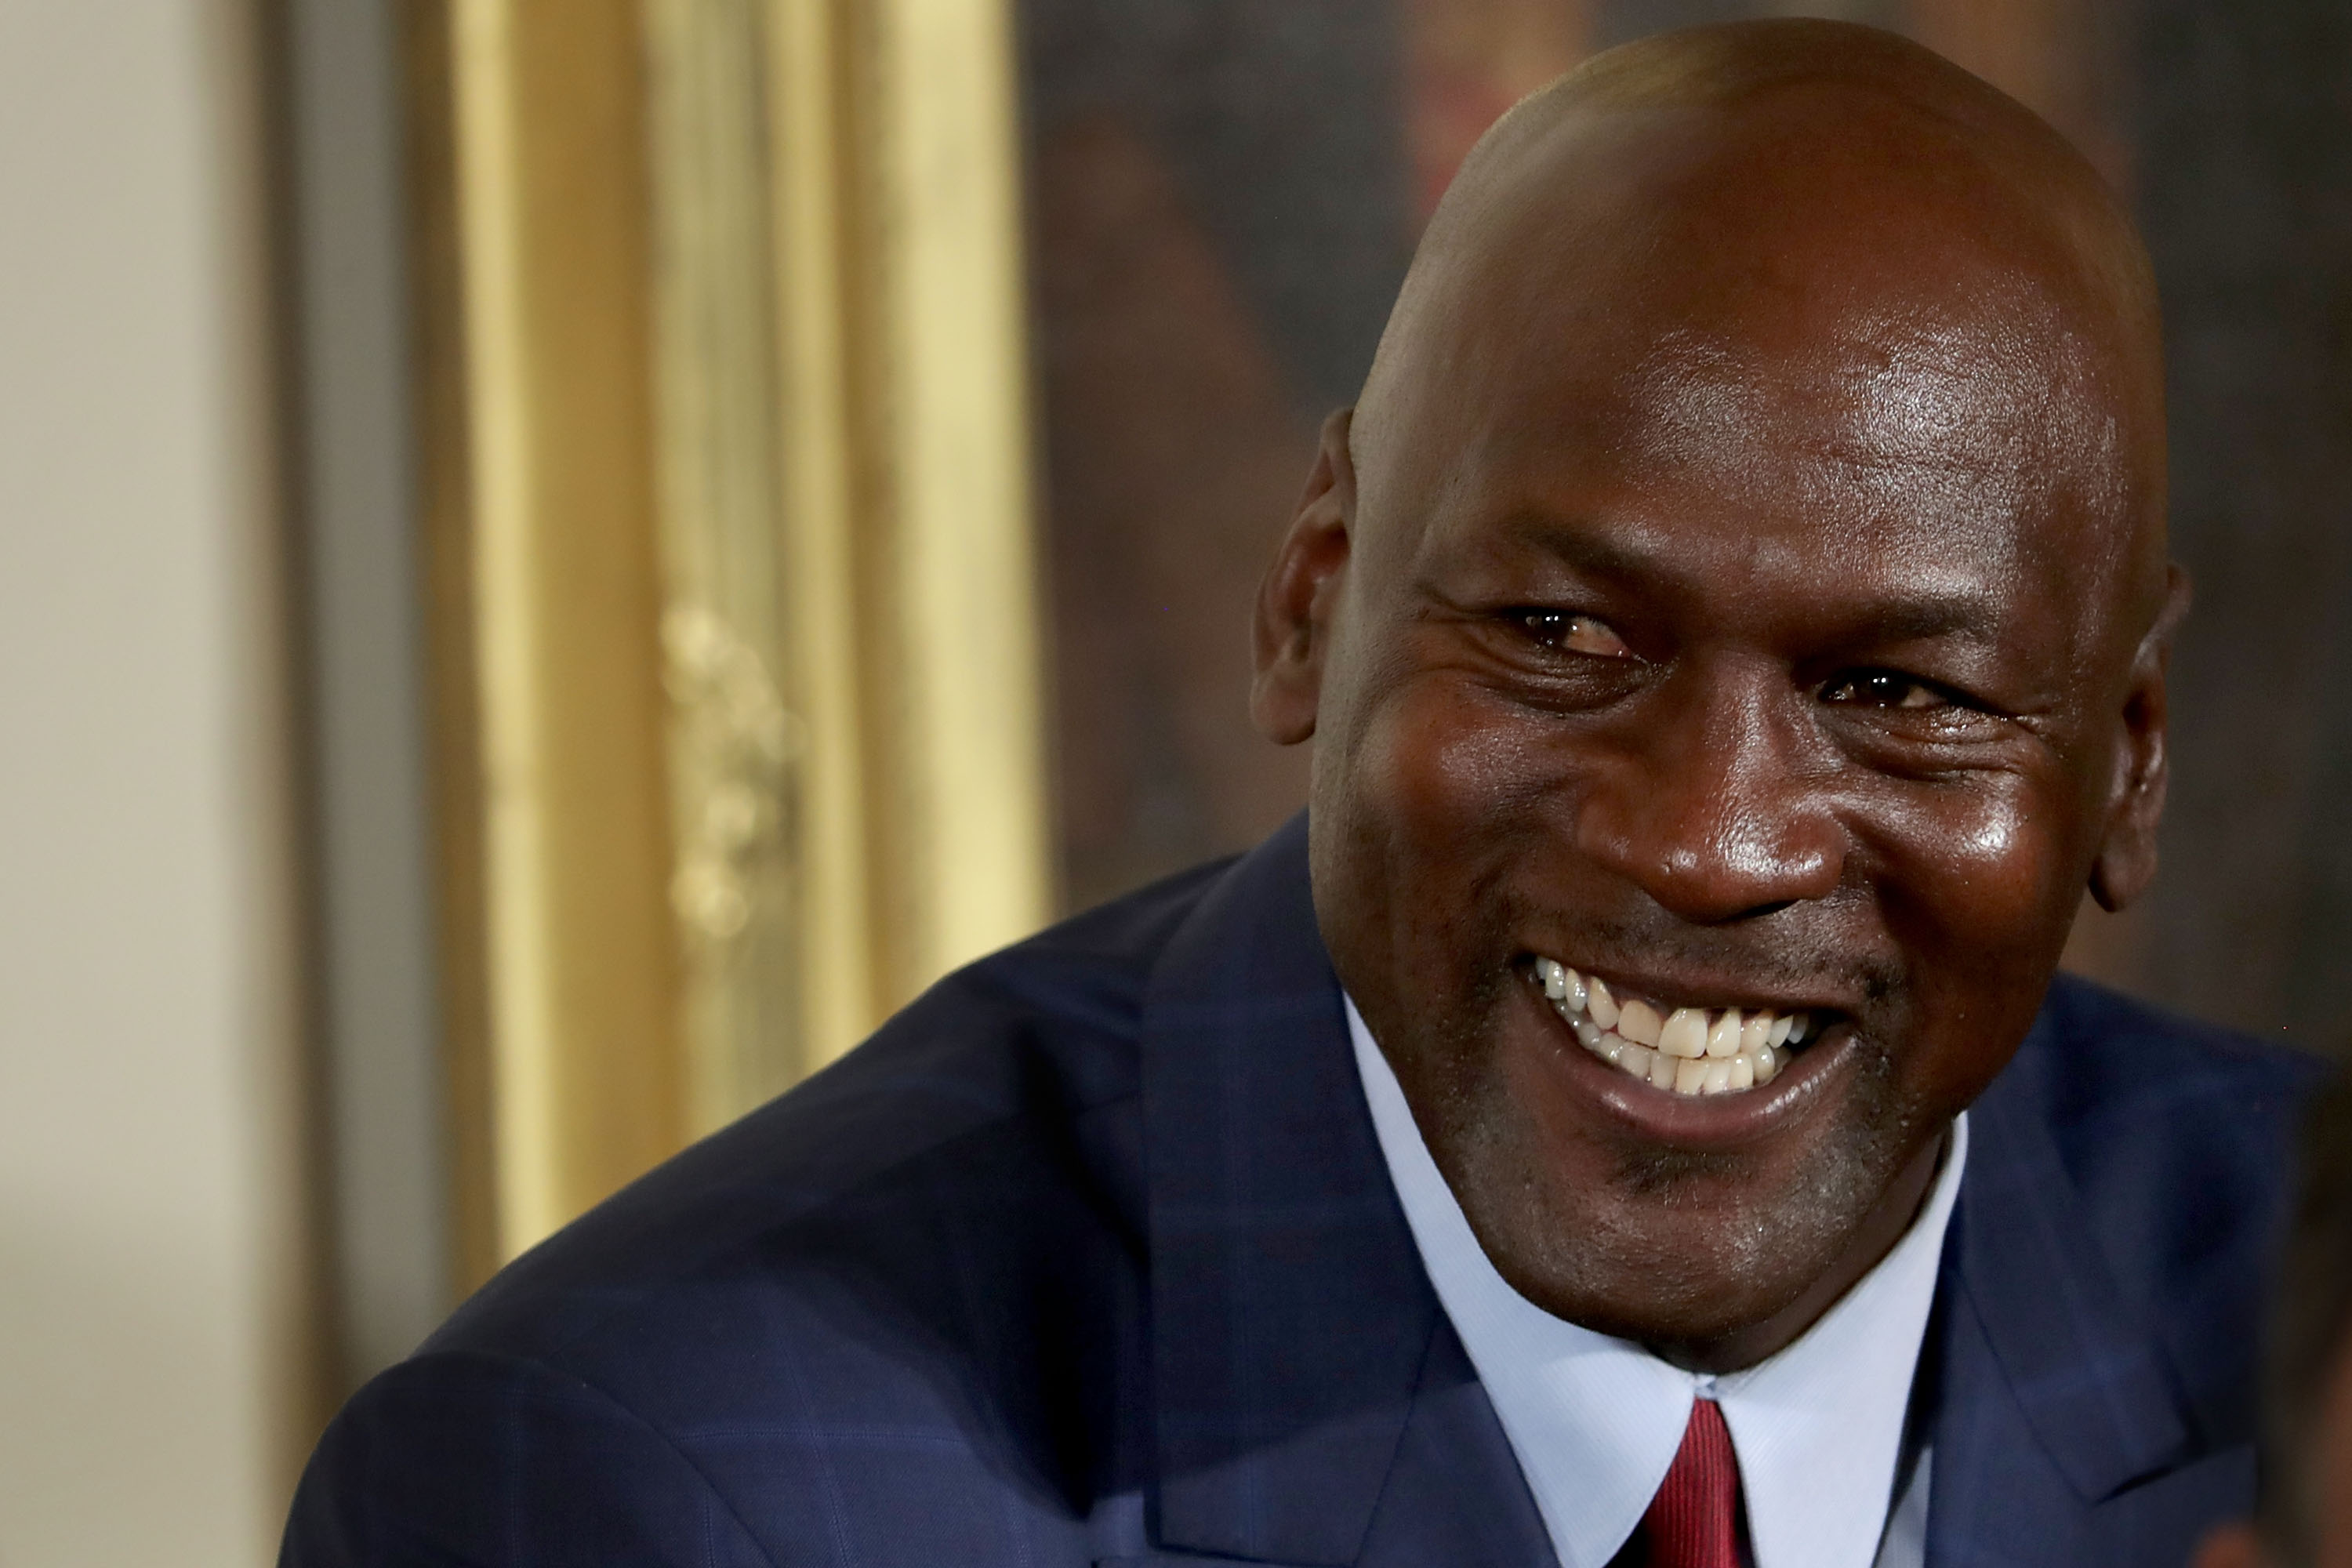 ¿En qué gasta su fortuna Michael Jordan, el deportista multimillonario